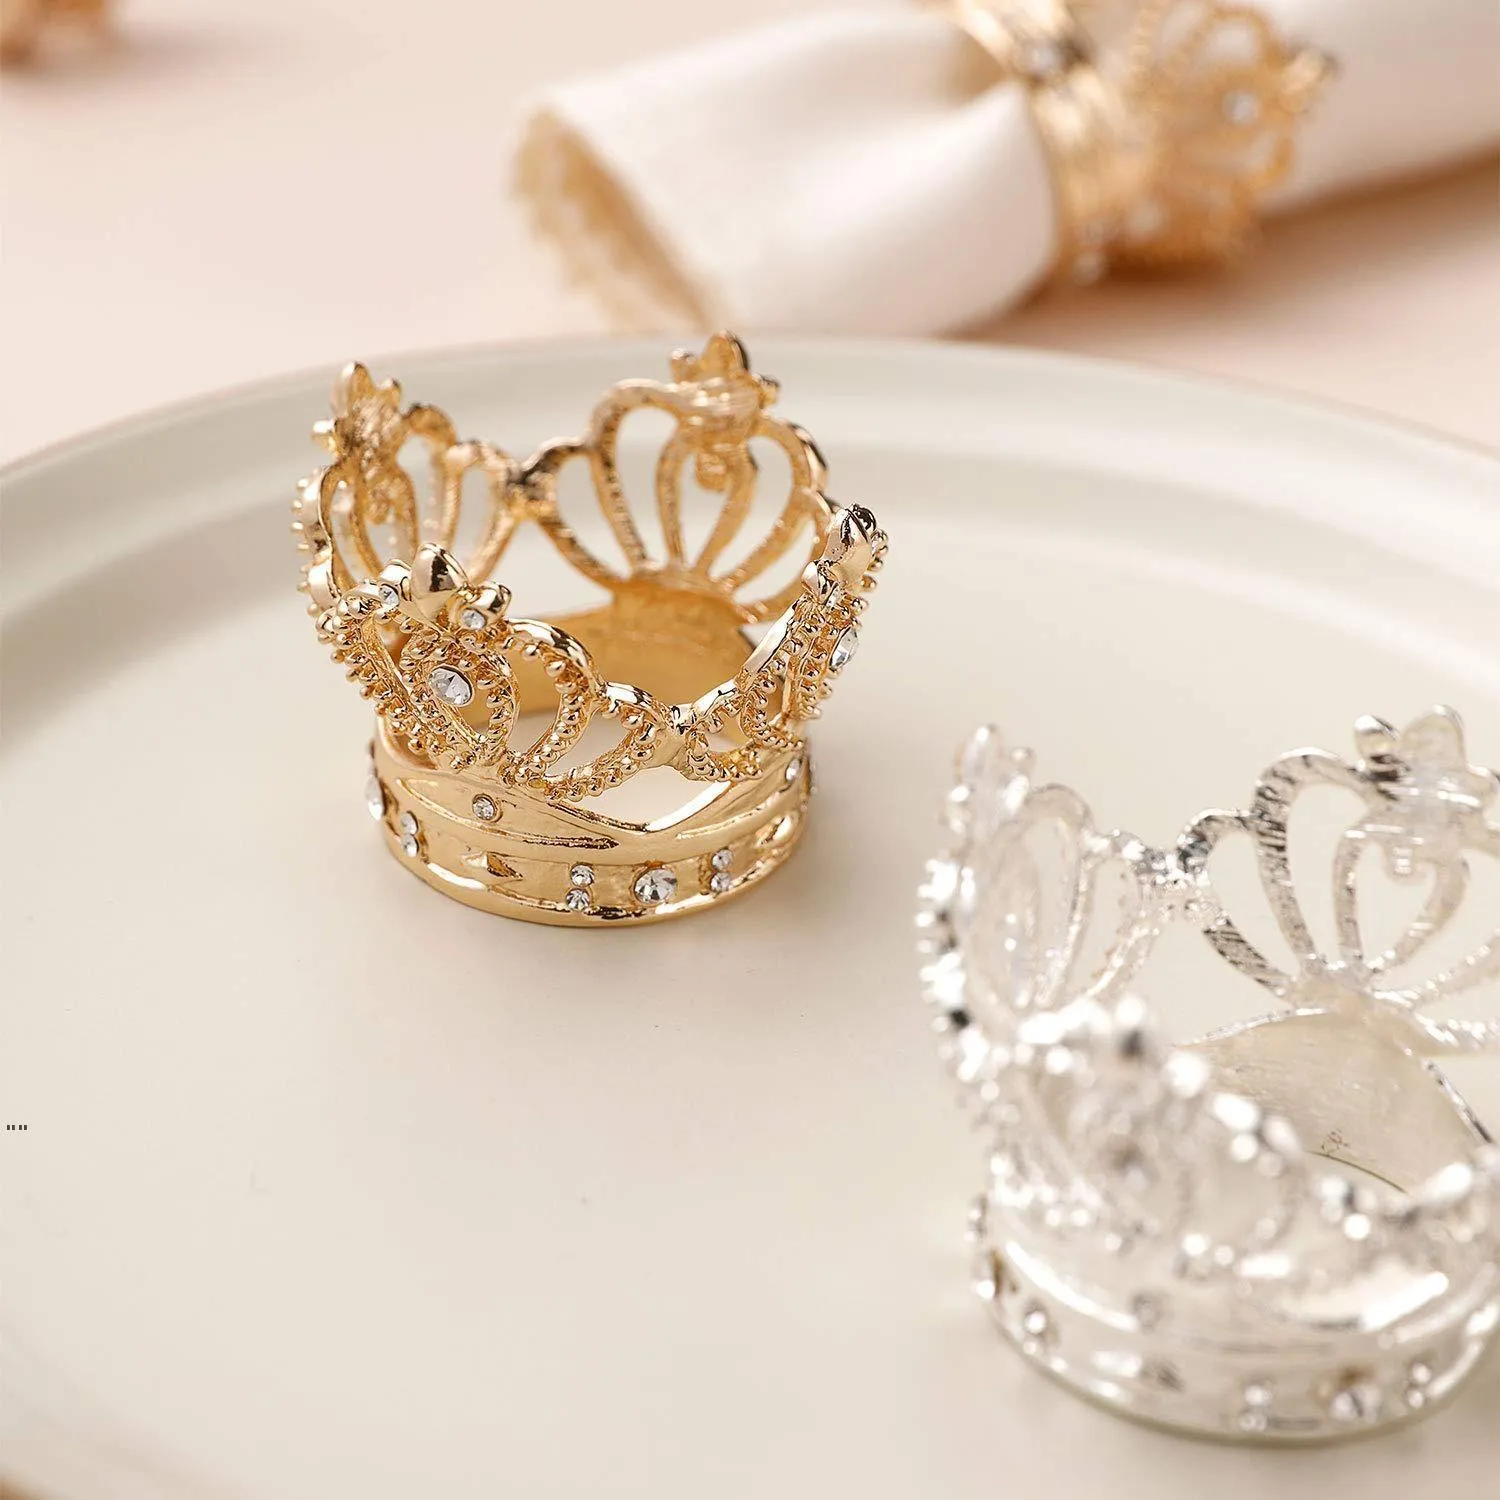 Pierścień na serwetce złota srebrne serwetki bukle hotel ślubne pierścionki z ręczniki Bankiet GWB15911